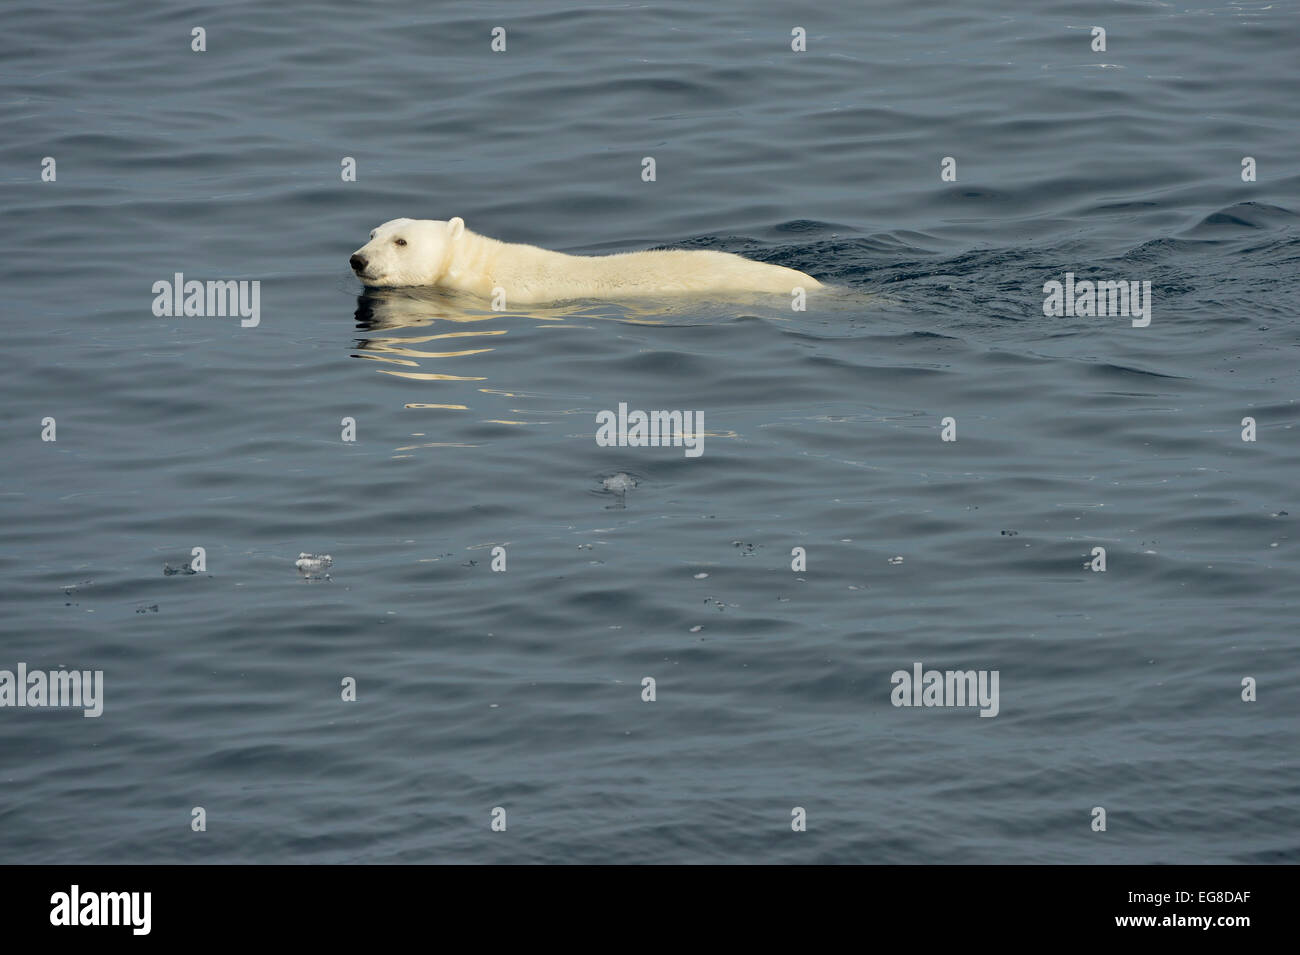 L'ours polaire (Ursus maritimus) nager dans la mer, au large de l'île de Baffin, au Canada, en août Banque D'Images